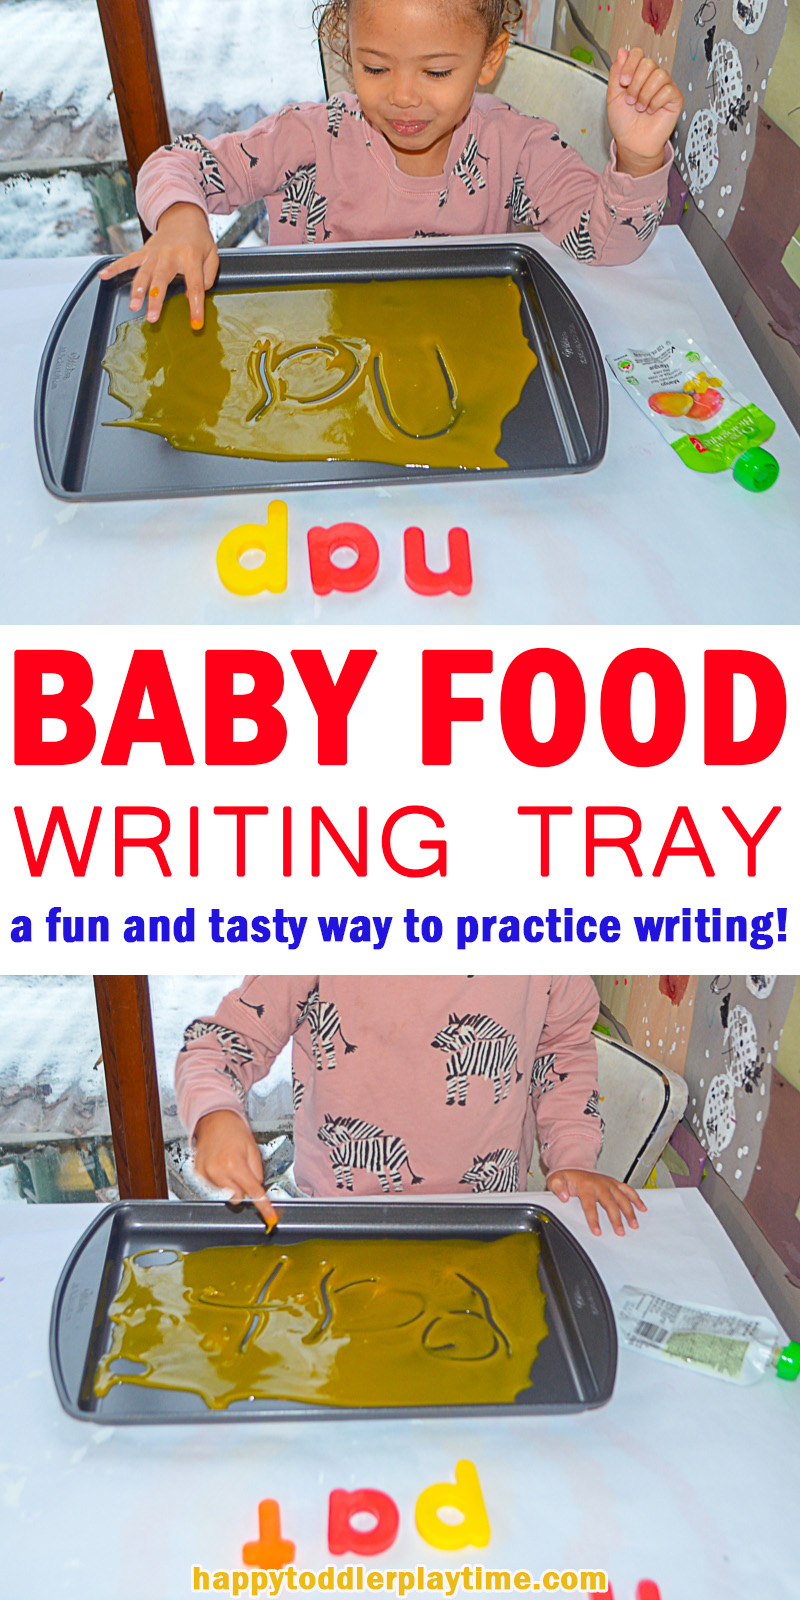 BABY FOOD WRITING TRAY pin